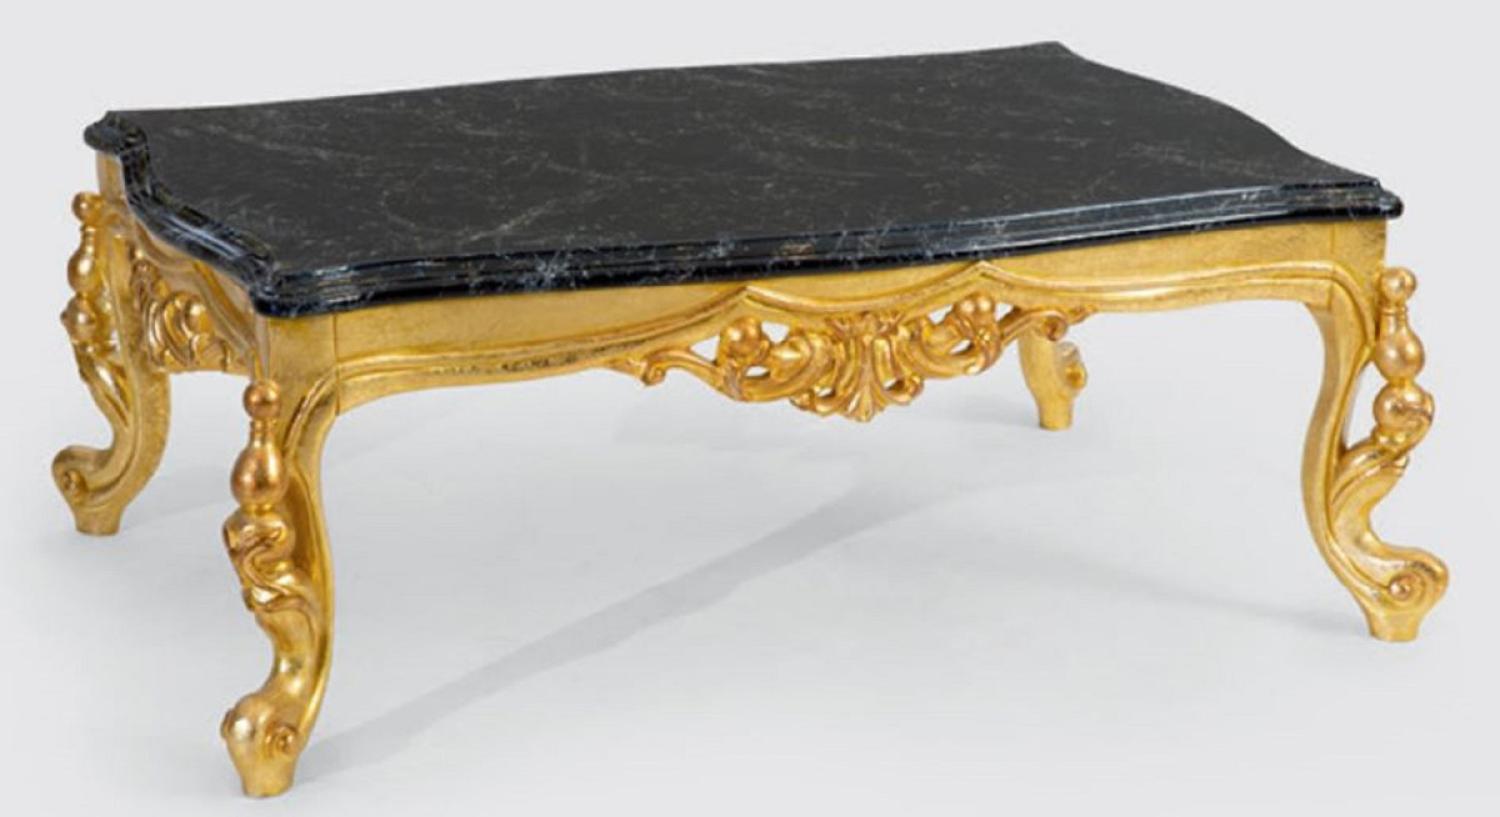 Casa Padrino Luxus Barock Couchtisch Schwarz / Gold 120 x 80 x H. 50 cm - Prunkvoller Massivholz Wohnzimmertisch mit Tischplatte in Marmoroptik - Barock Möbel Bild 1